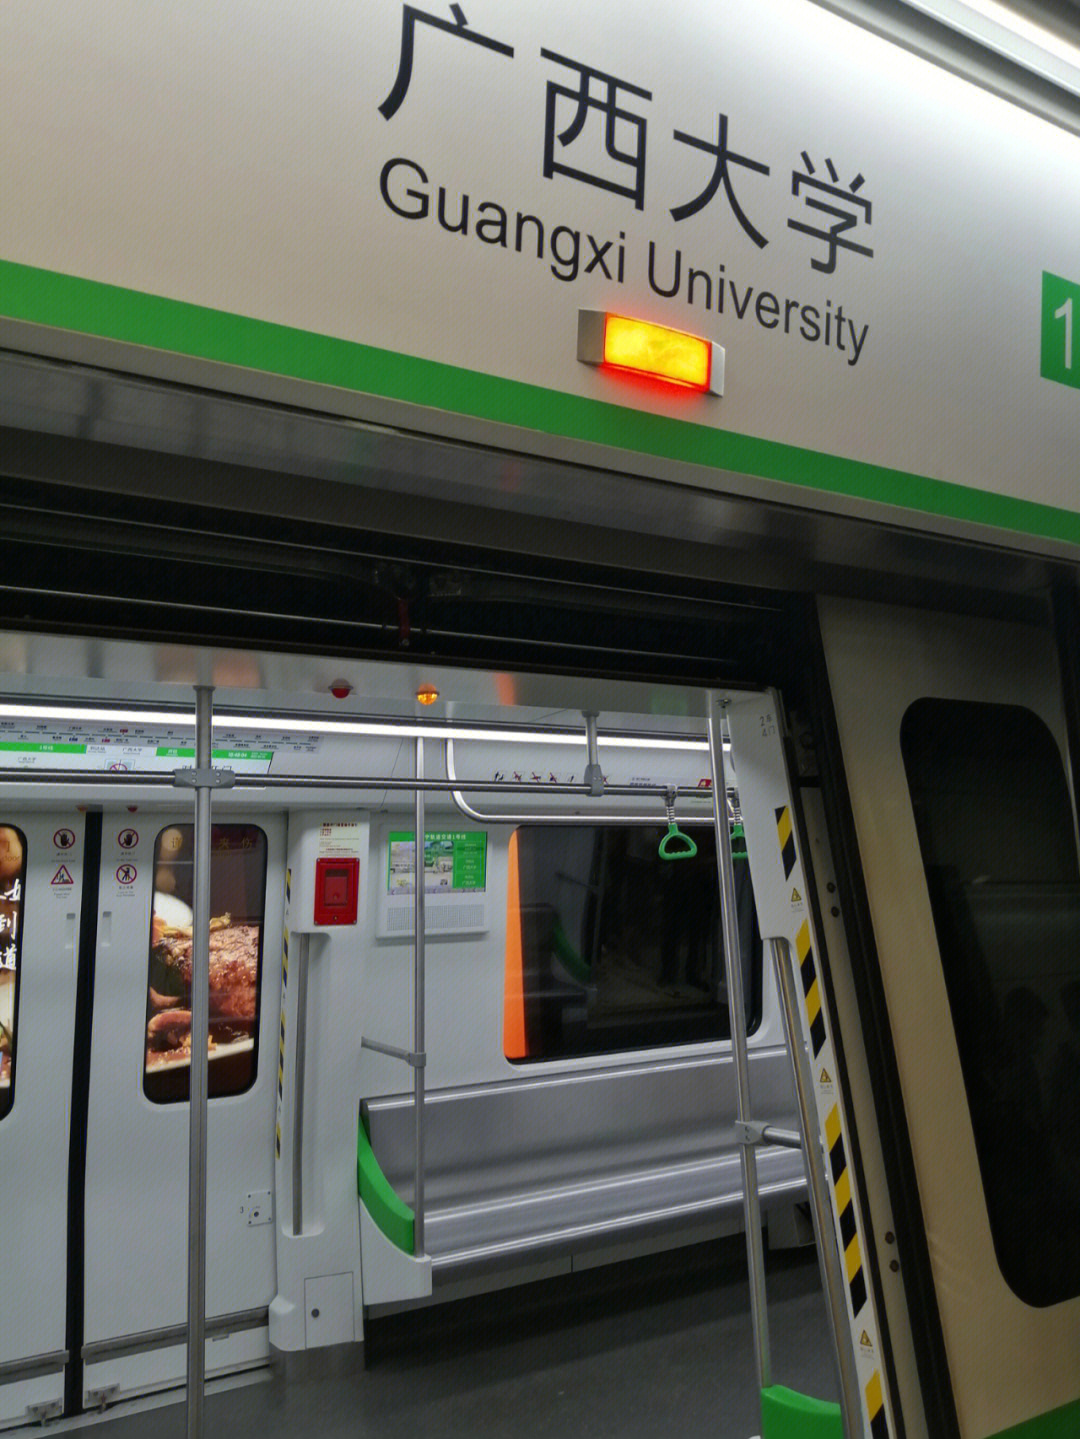 下班后,去坐地铁一号线到西乡塘客运站,上去后才发现,终点站是广西